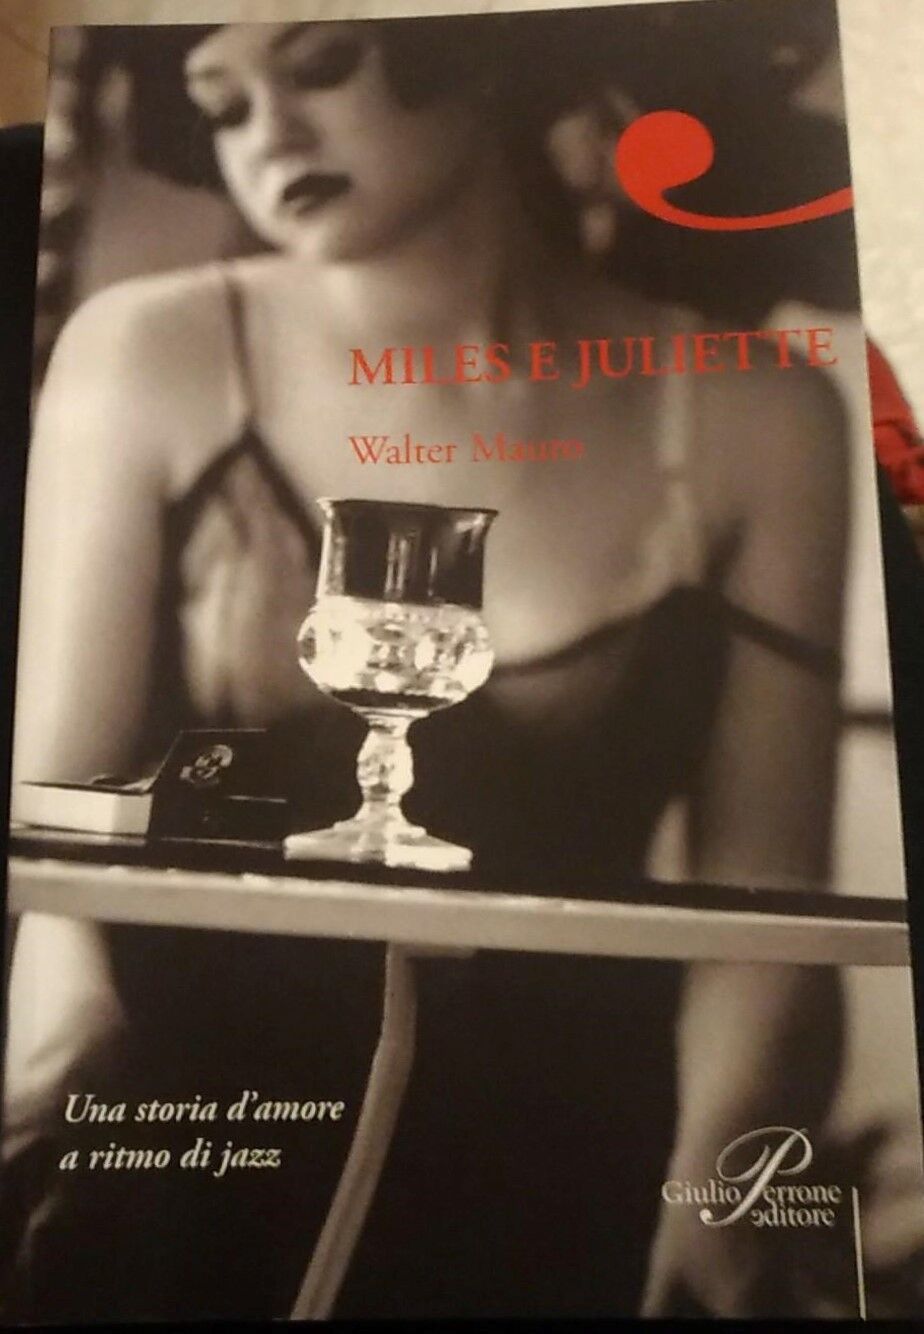   Miles e Juliette - Walter Mauro,  2008,  Perrone - S